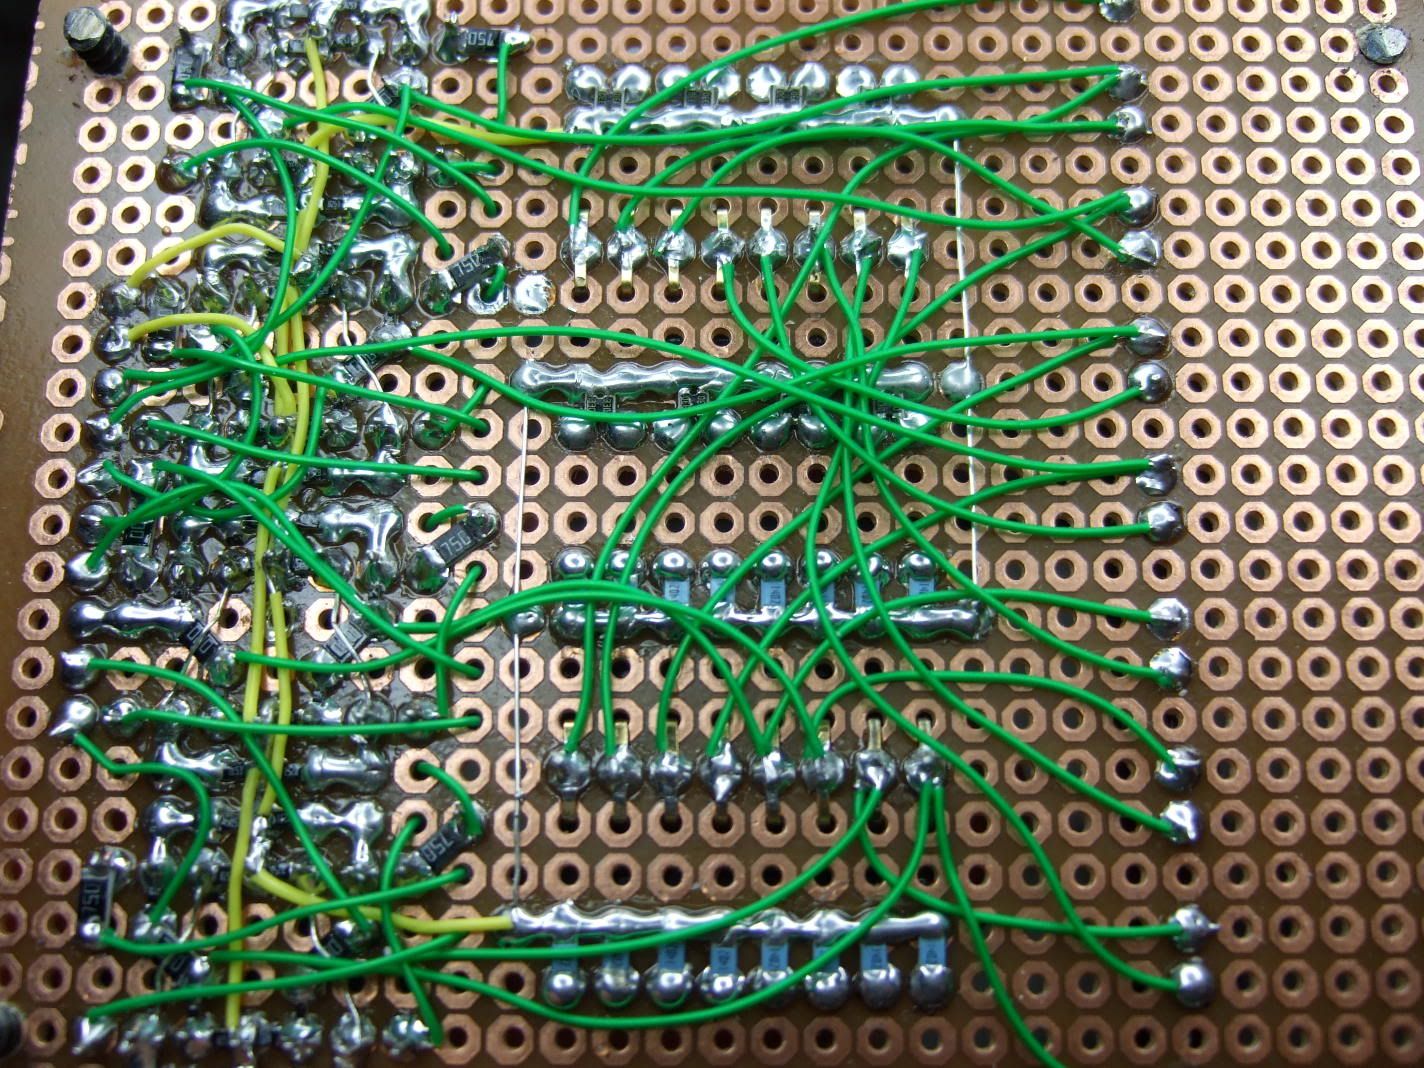 kynar wire